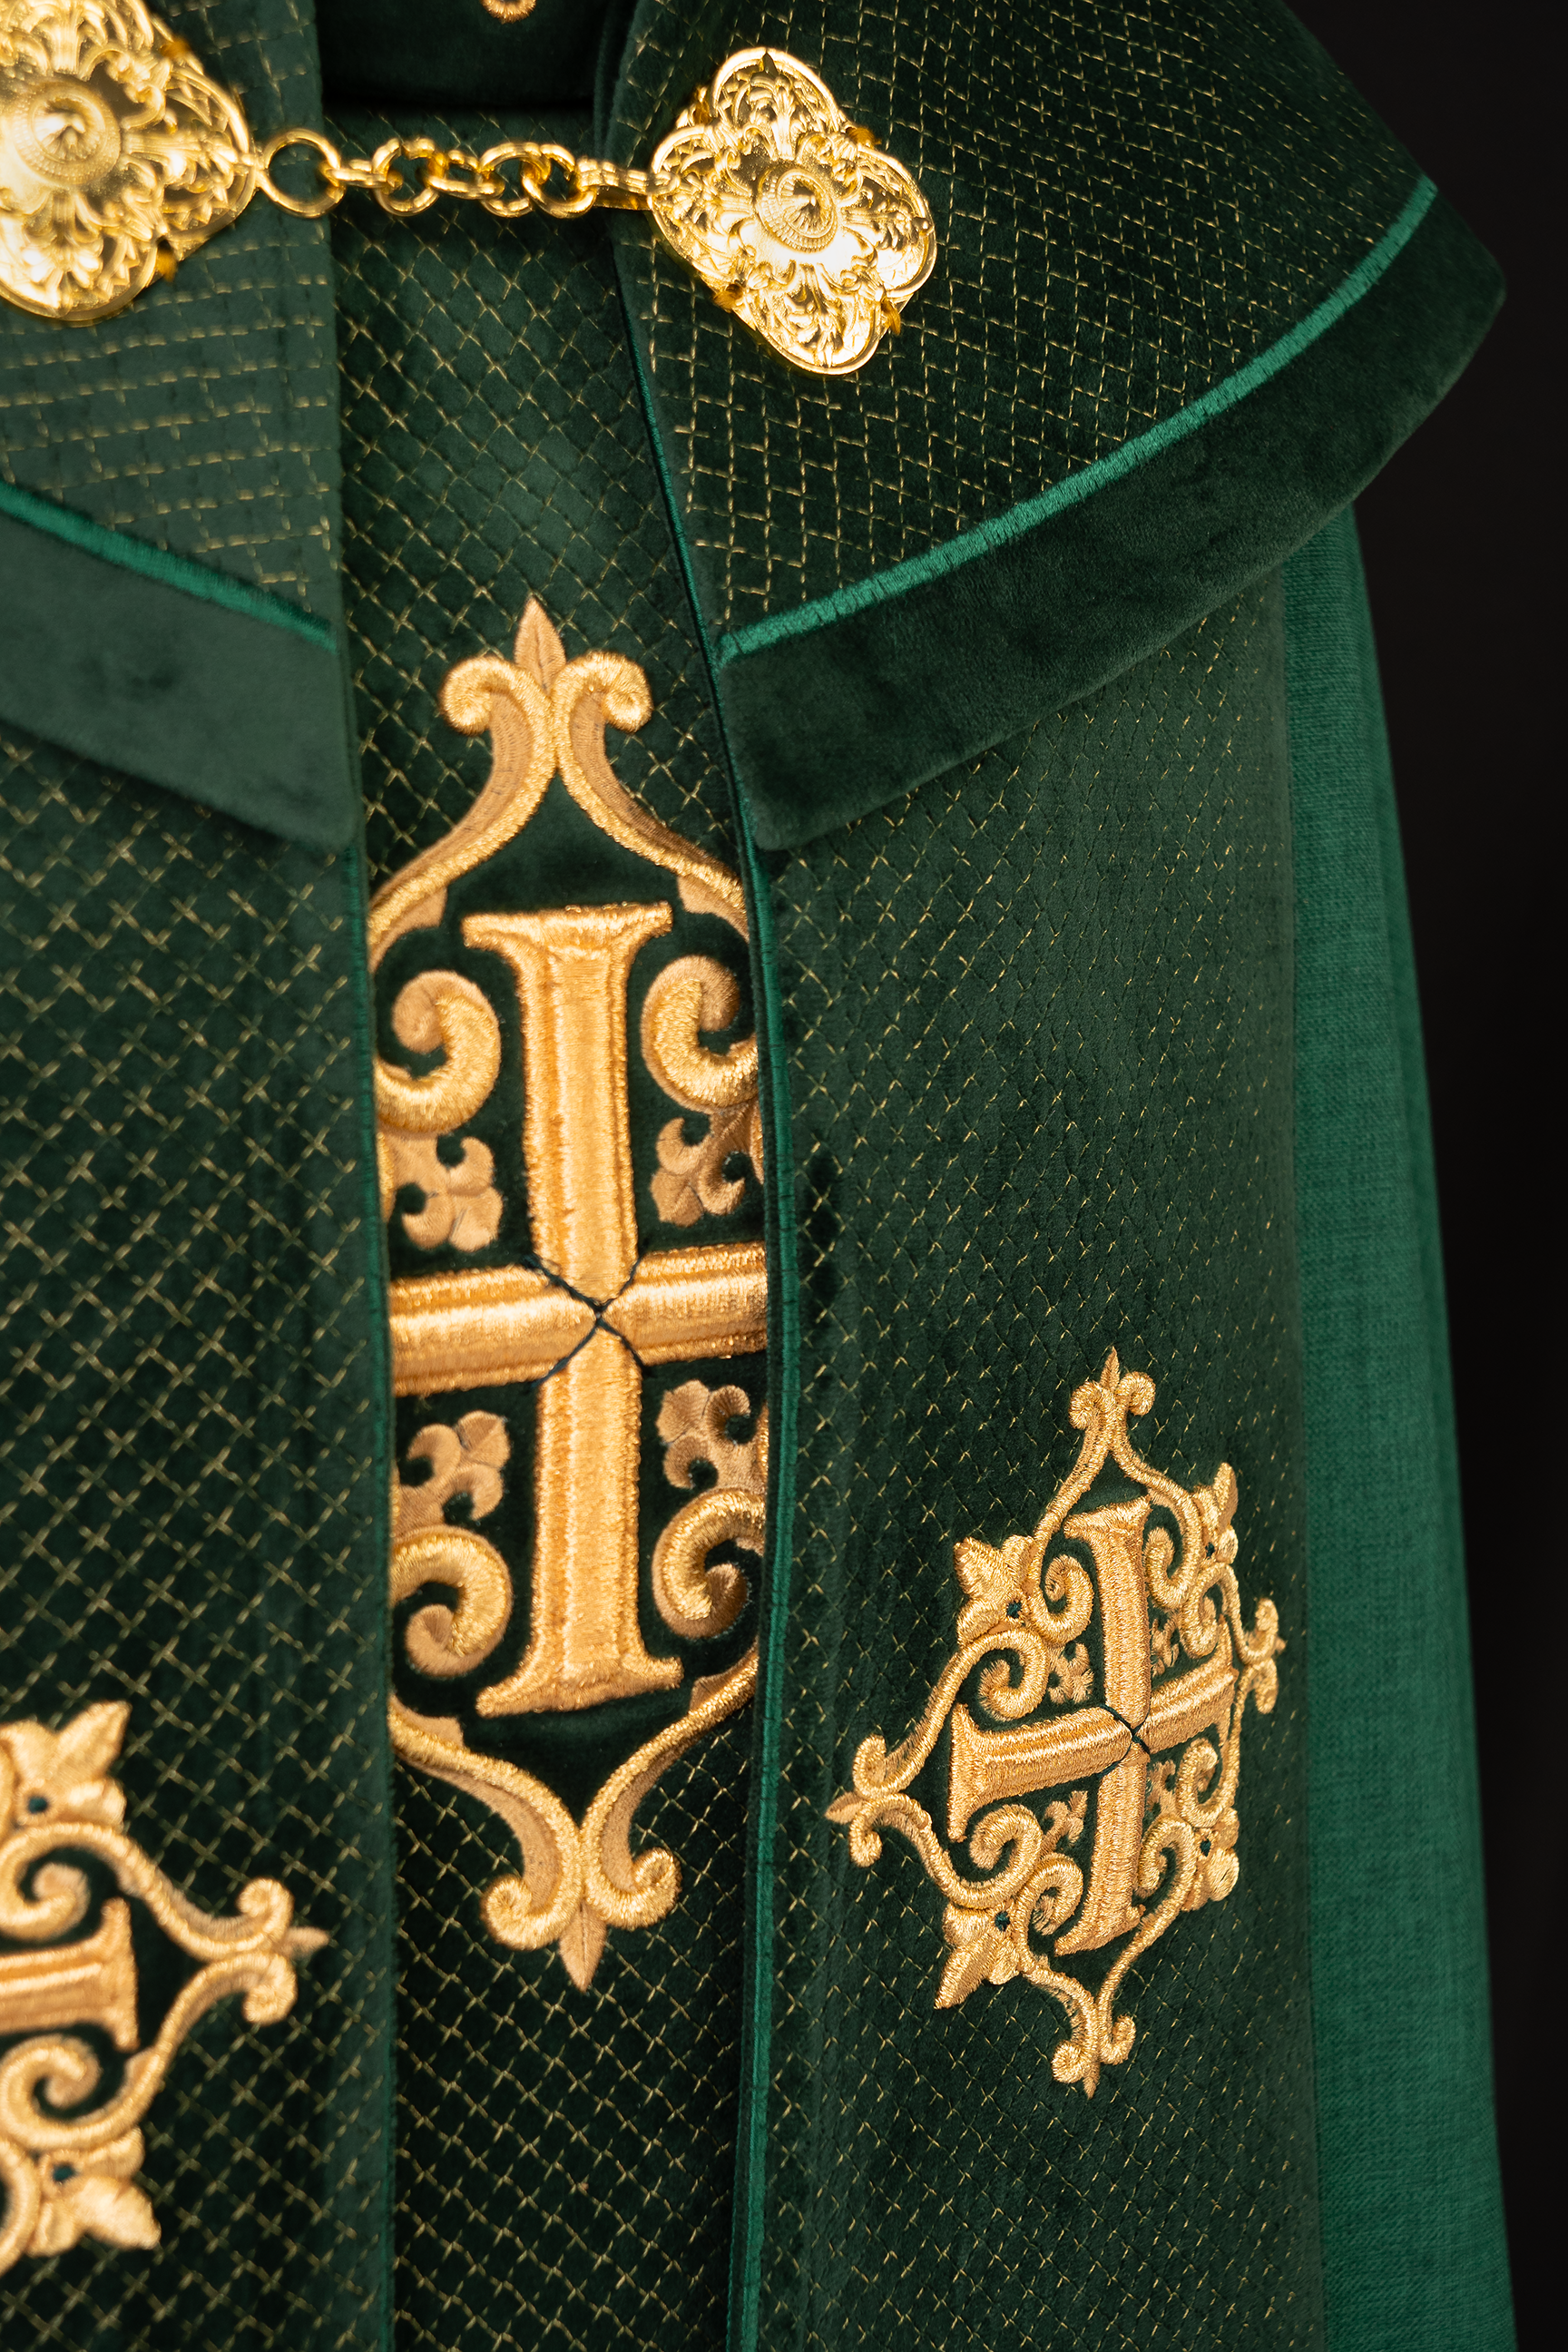 Kapa liturgiczna z aksamitnym zielonym pasem i haftem krzyży